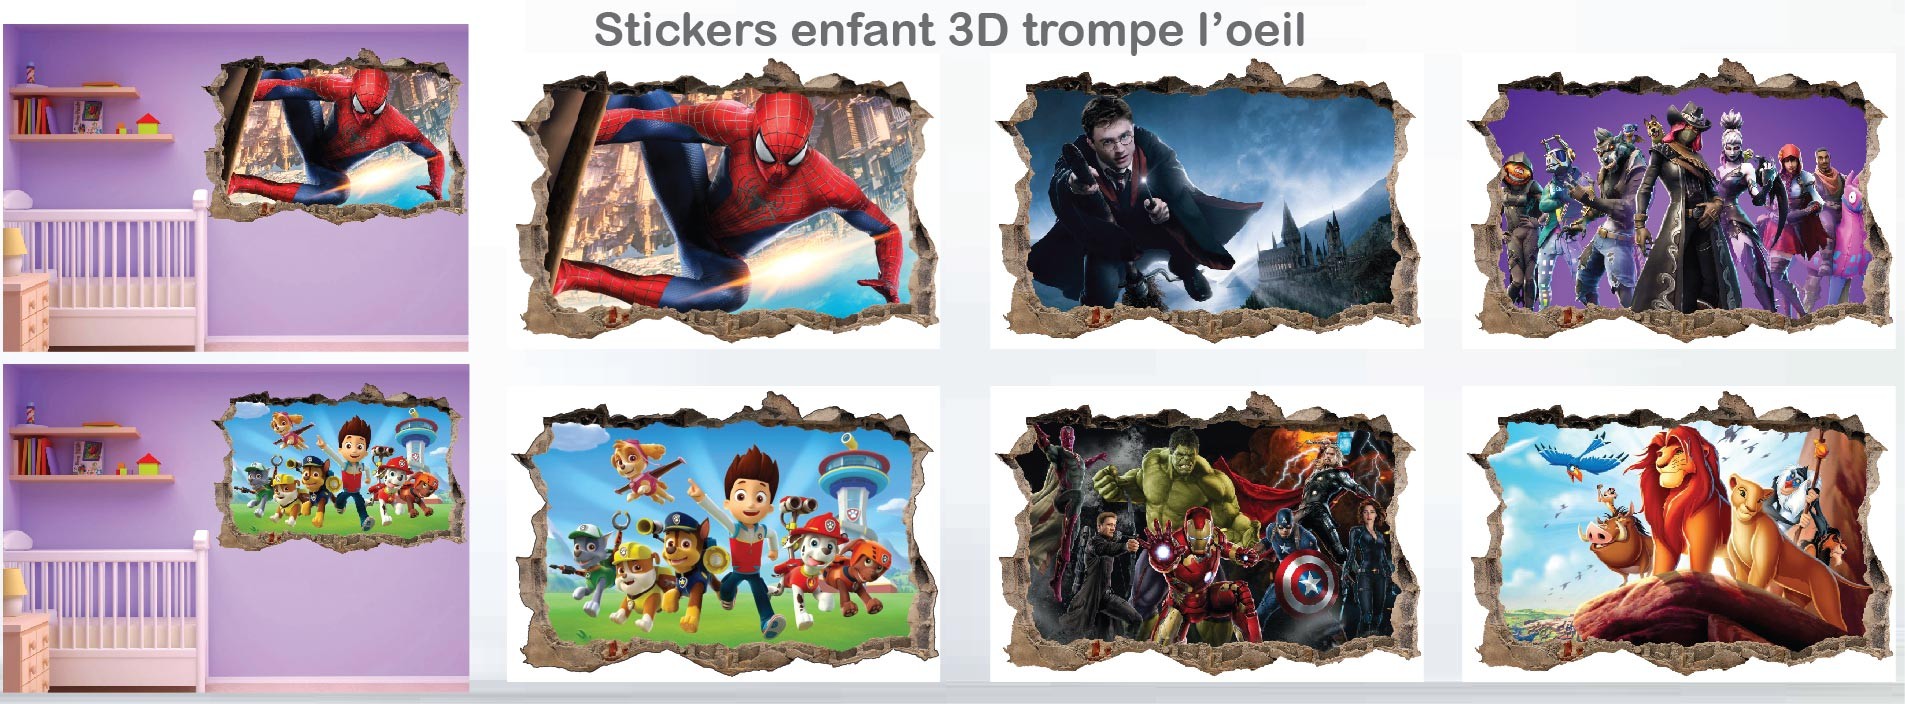 Stickers enfant 3D